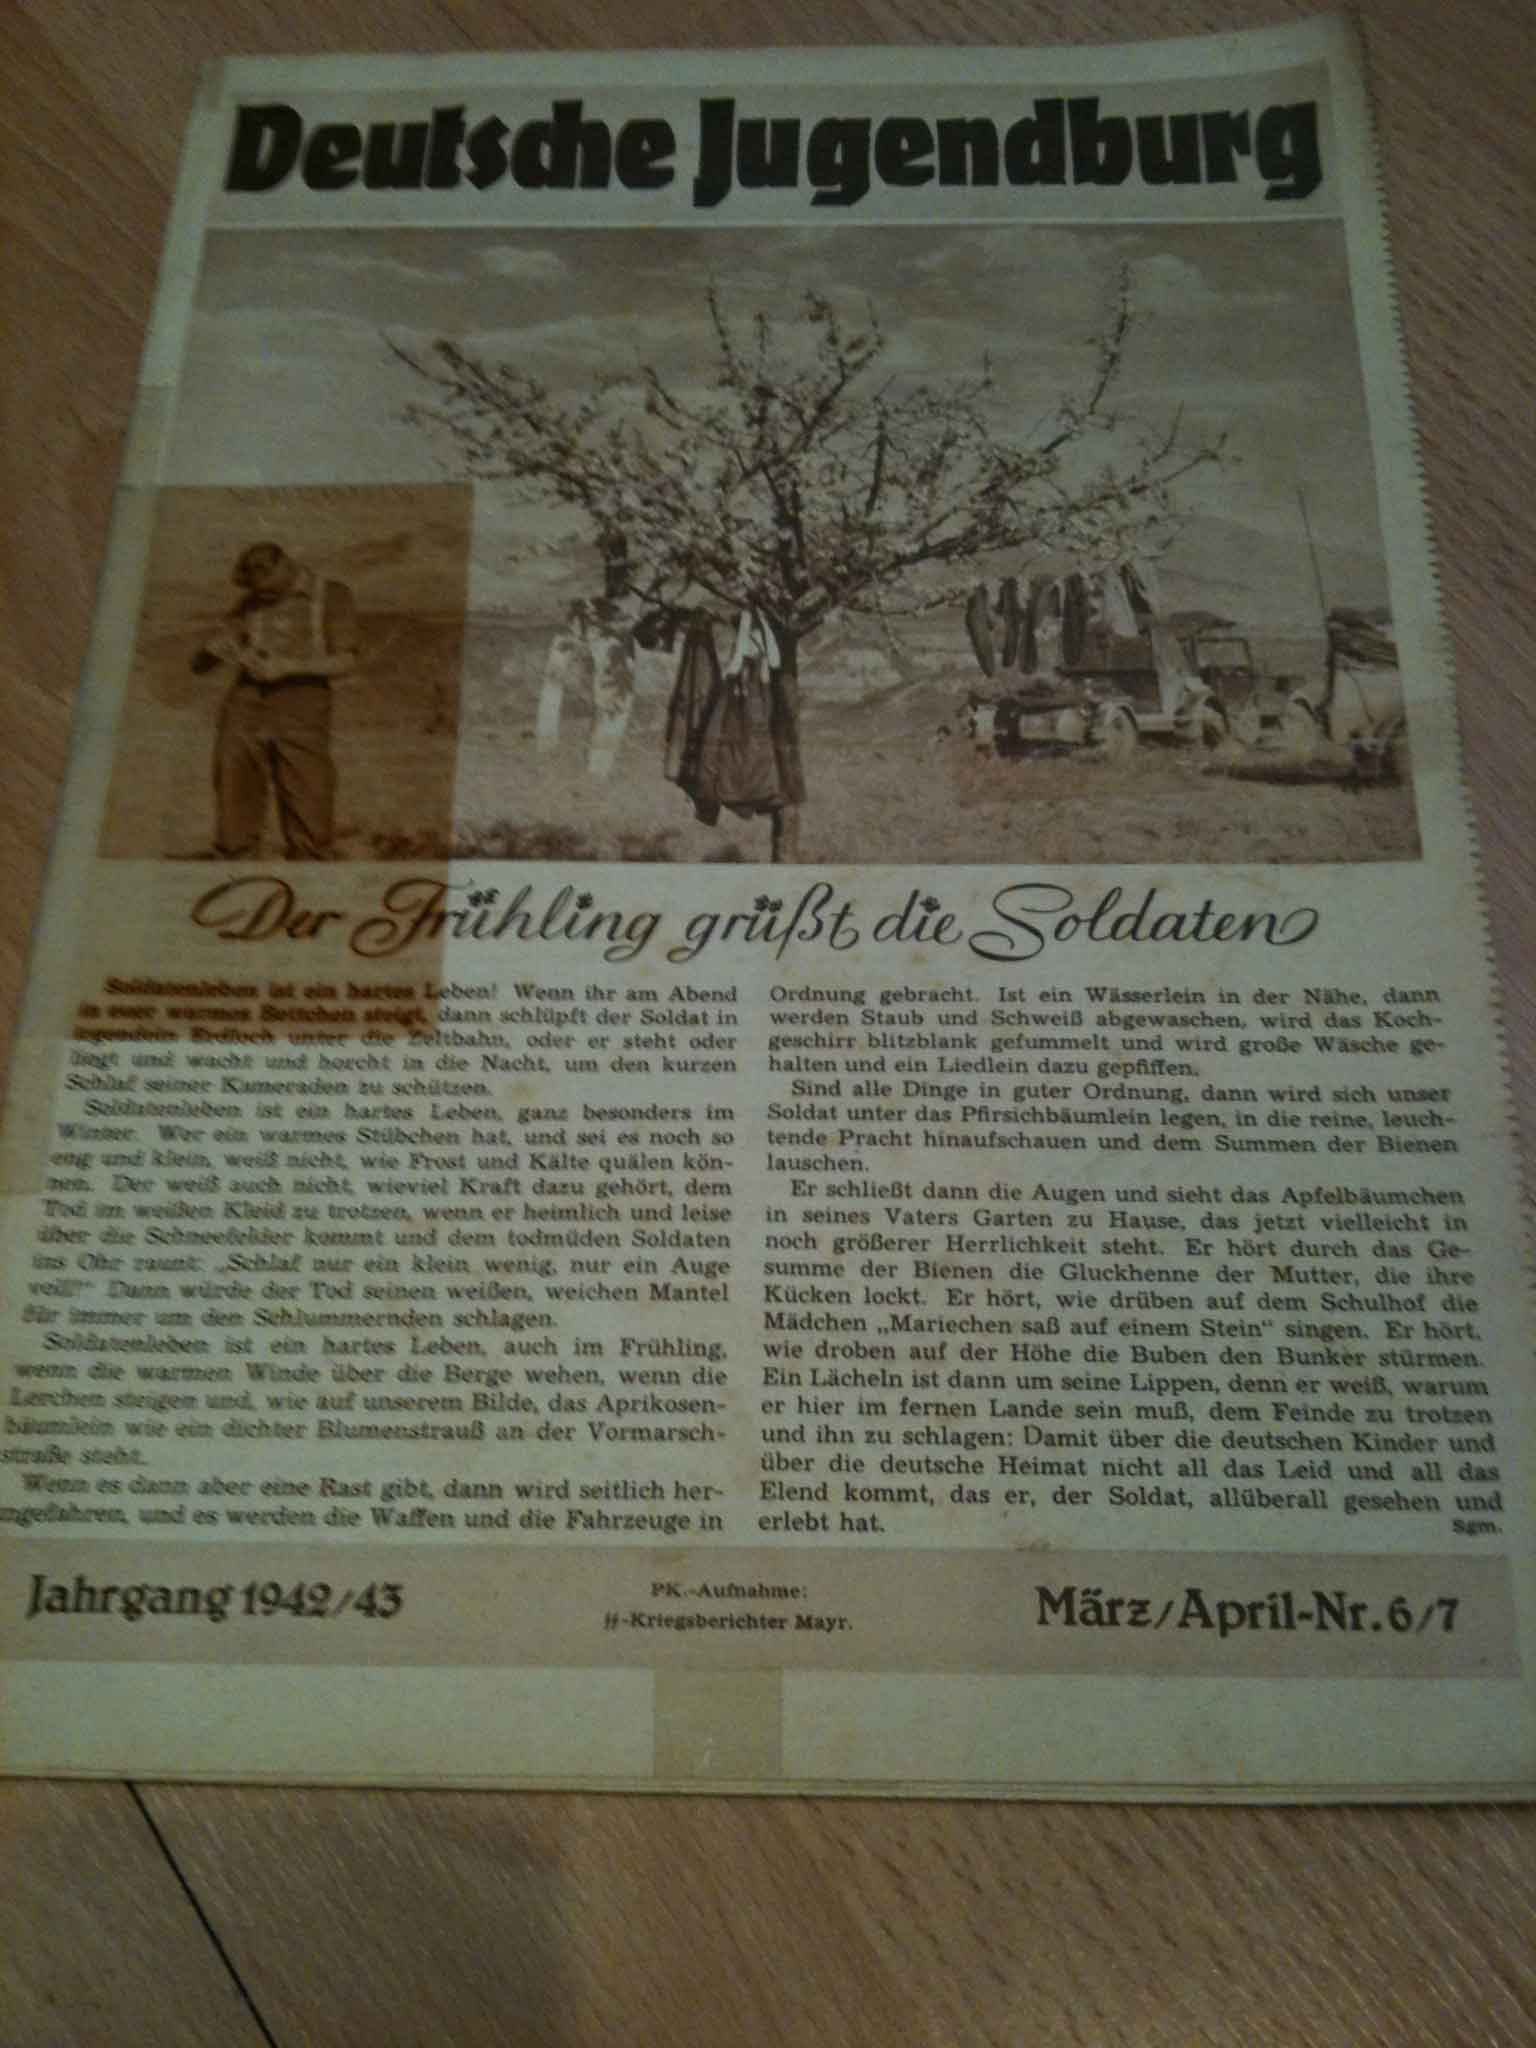 Nr. 6-7 , März / April 1943, Deutsche Jugendburg - Bilderzeitschrift für die Jüngsten